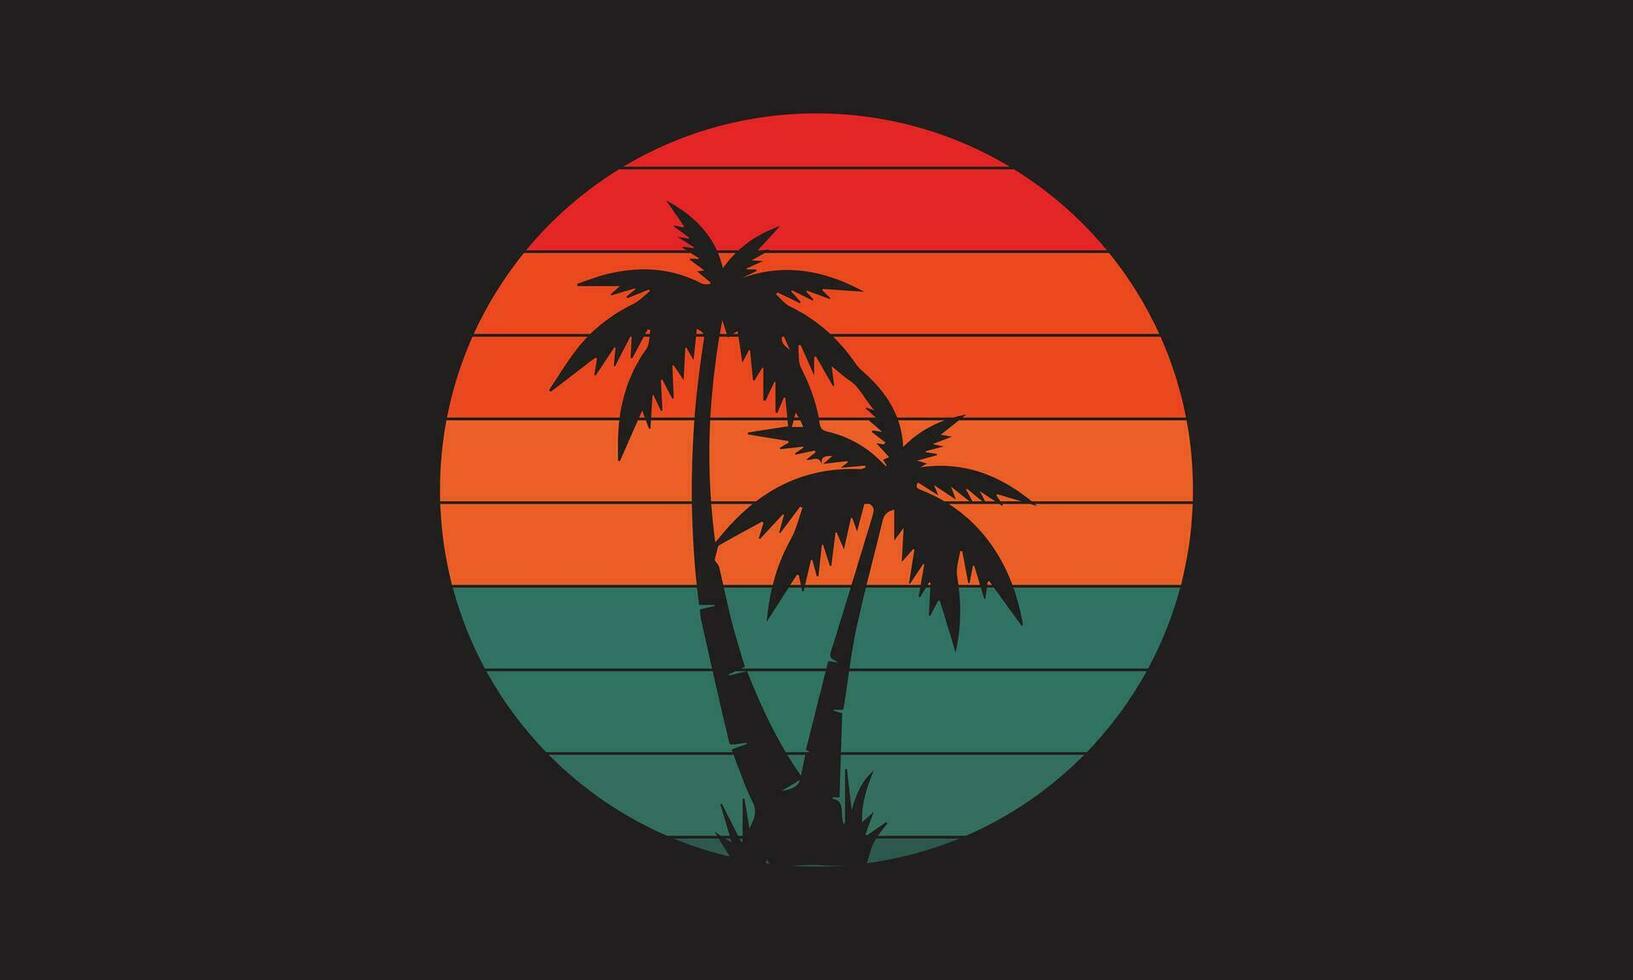 Clásico puesta de sol colección 90s estilo retro insignias, gradientes plantillas para etiquetas diseño grunge surf Oceano logos reciente vector colección conjunto